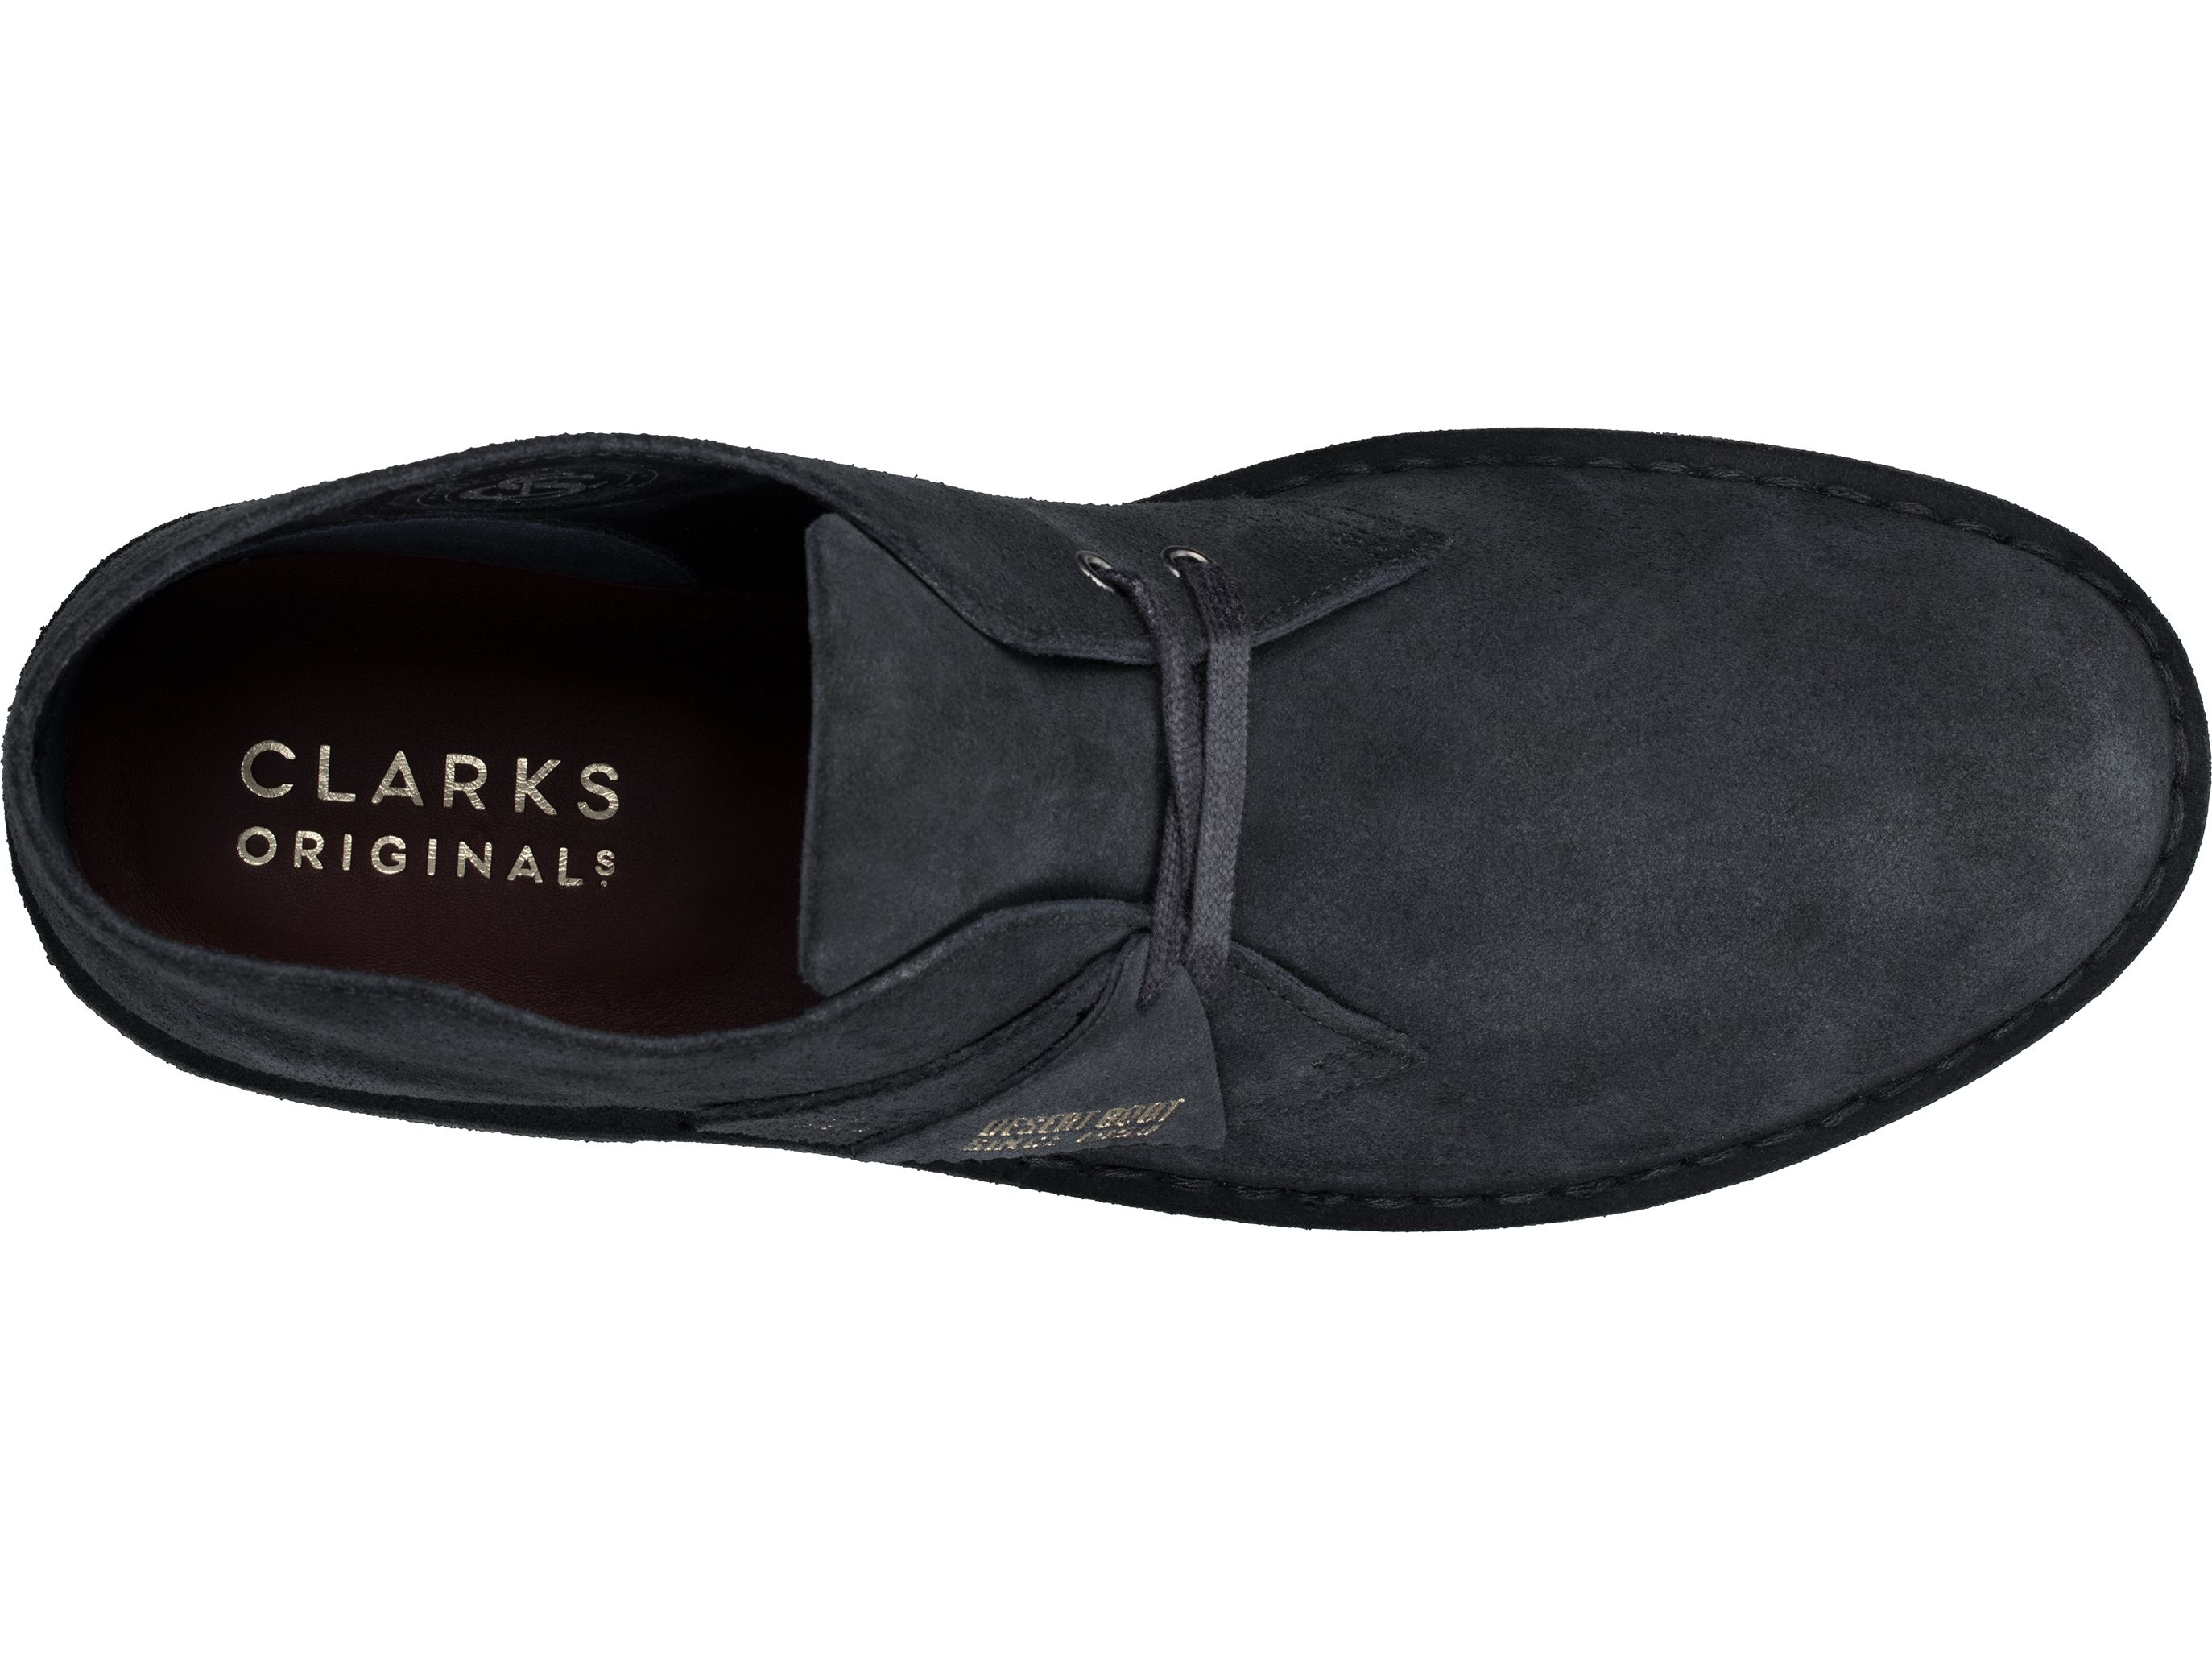 clarks-original-boot-schuhe-herren